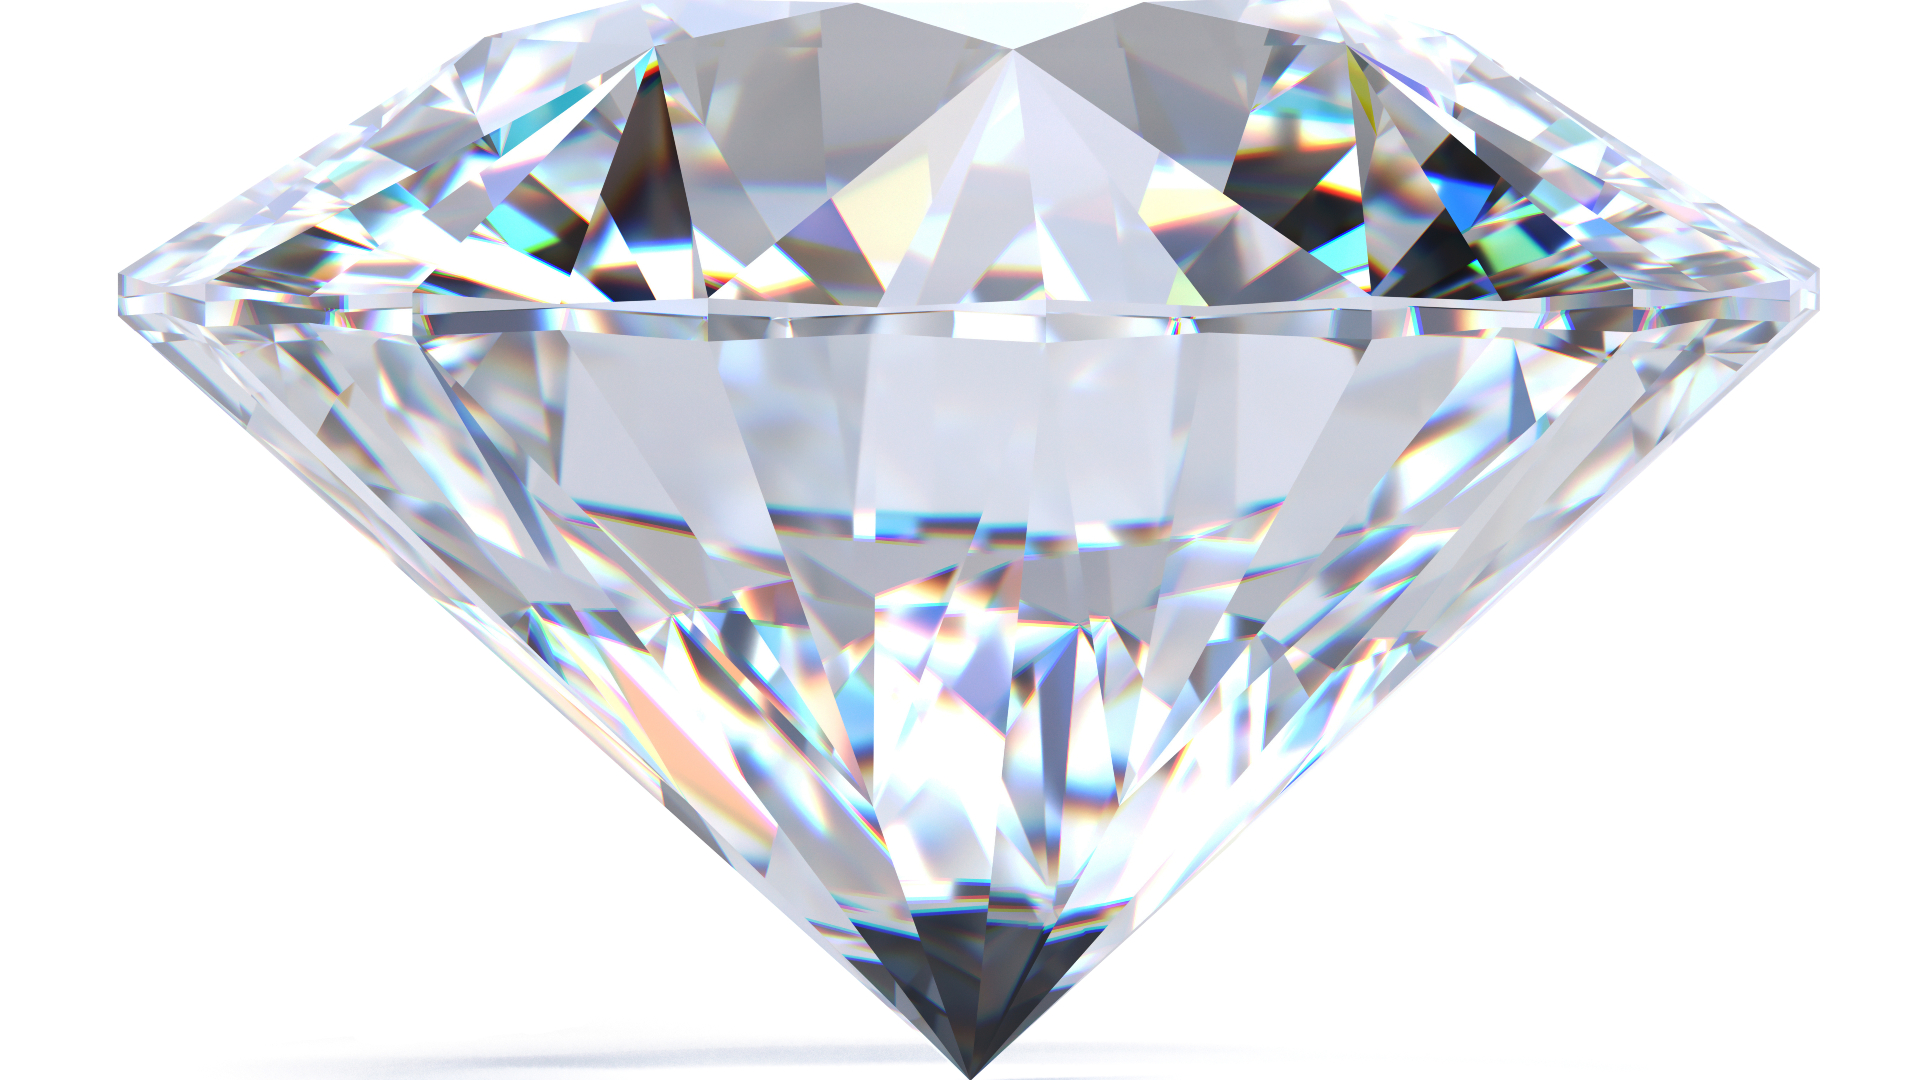 El diamante la piedra preciosa más conocida del planeta